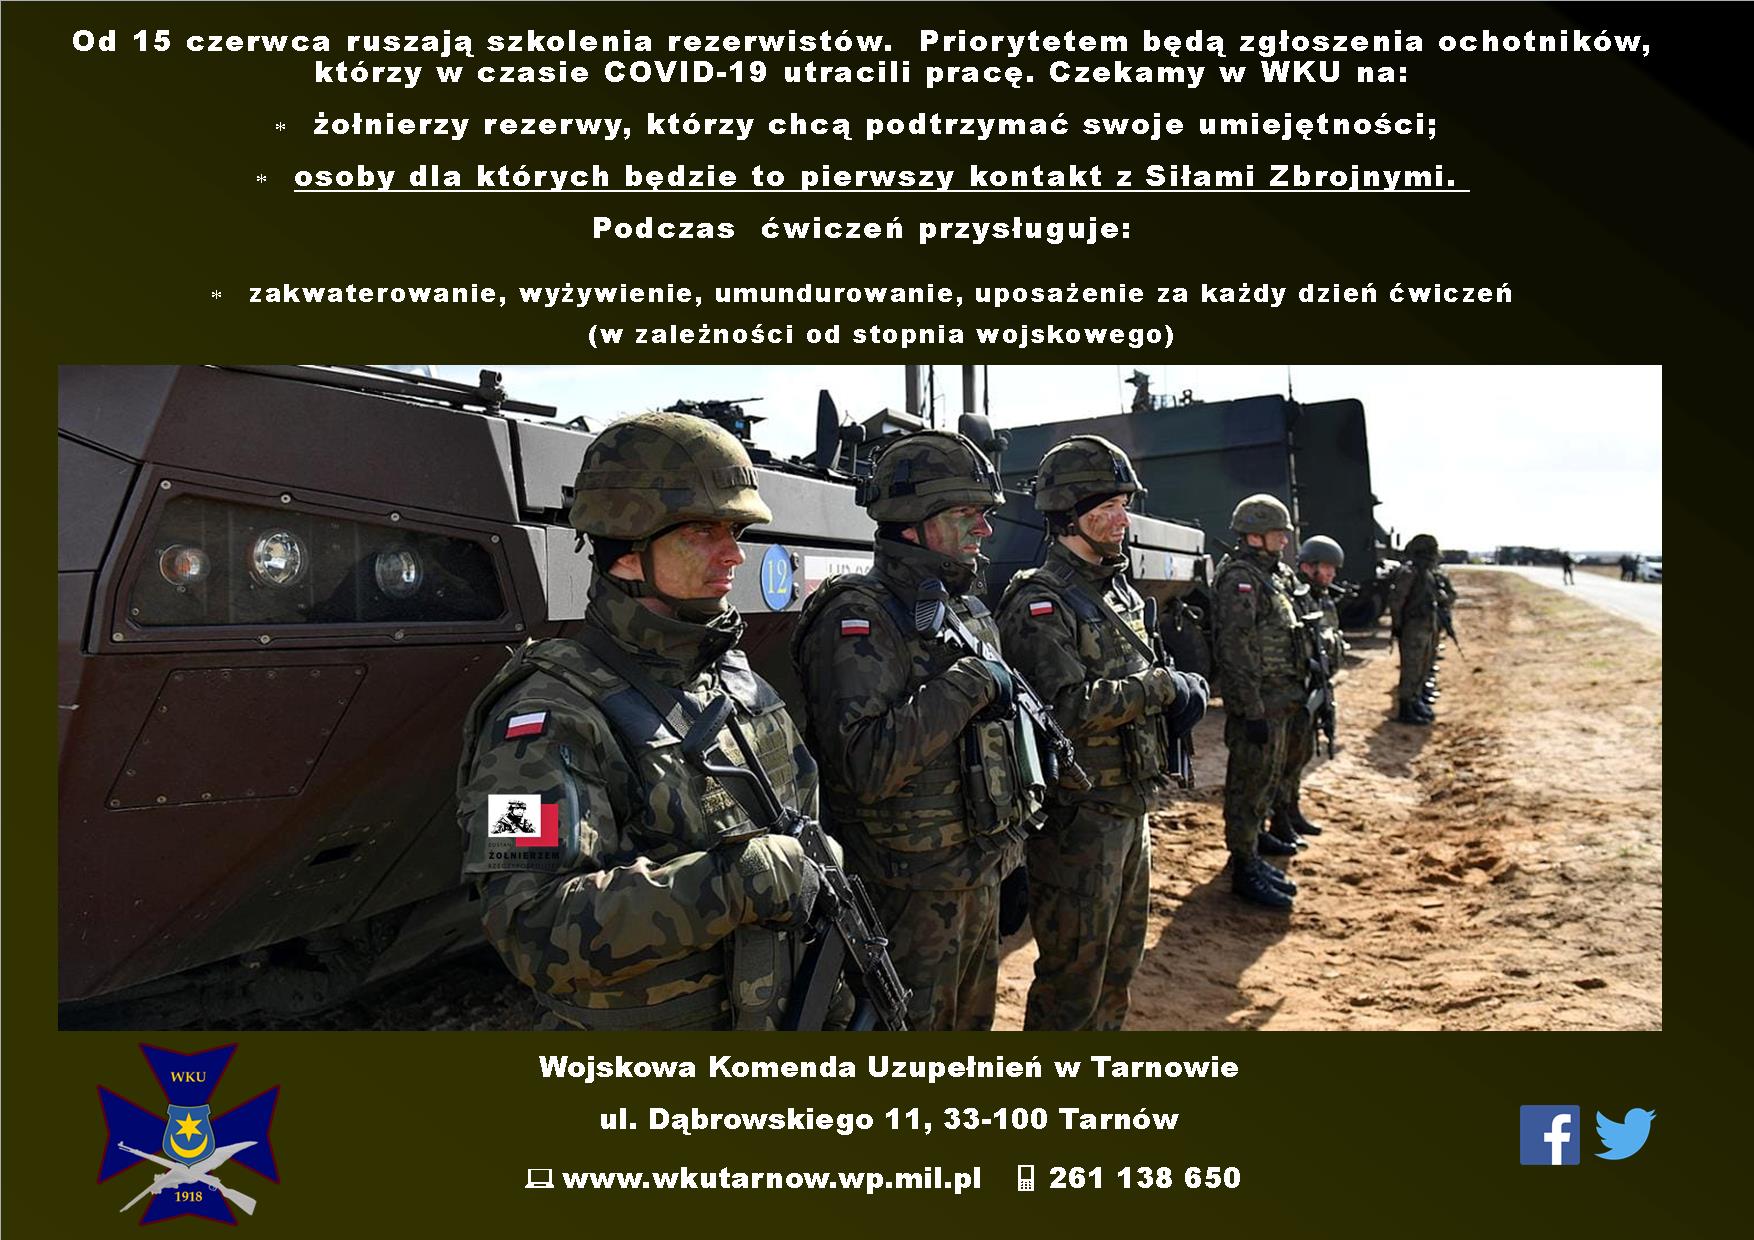 Ćwiczenia żołnierzy rezerwy - plakat informacyjn